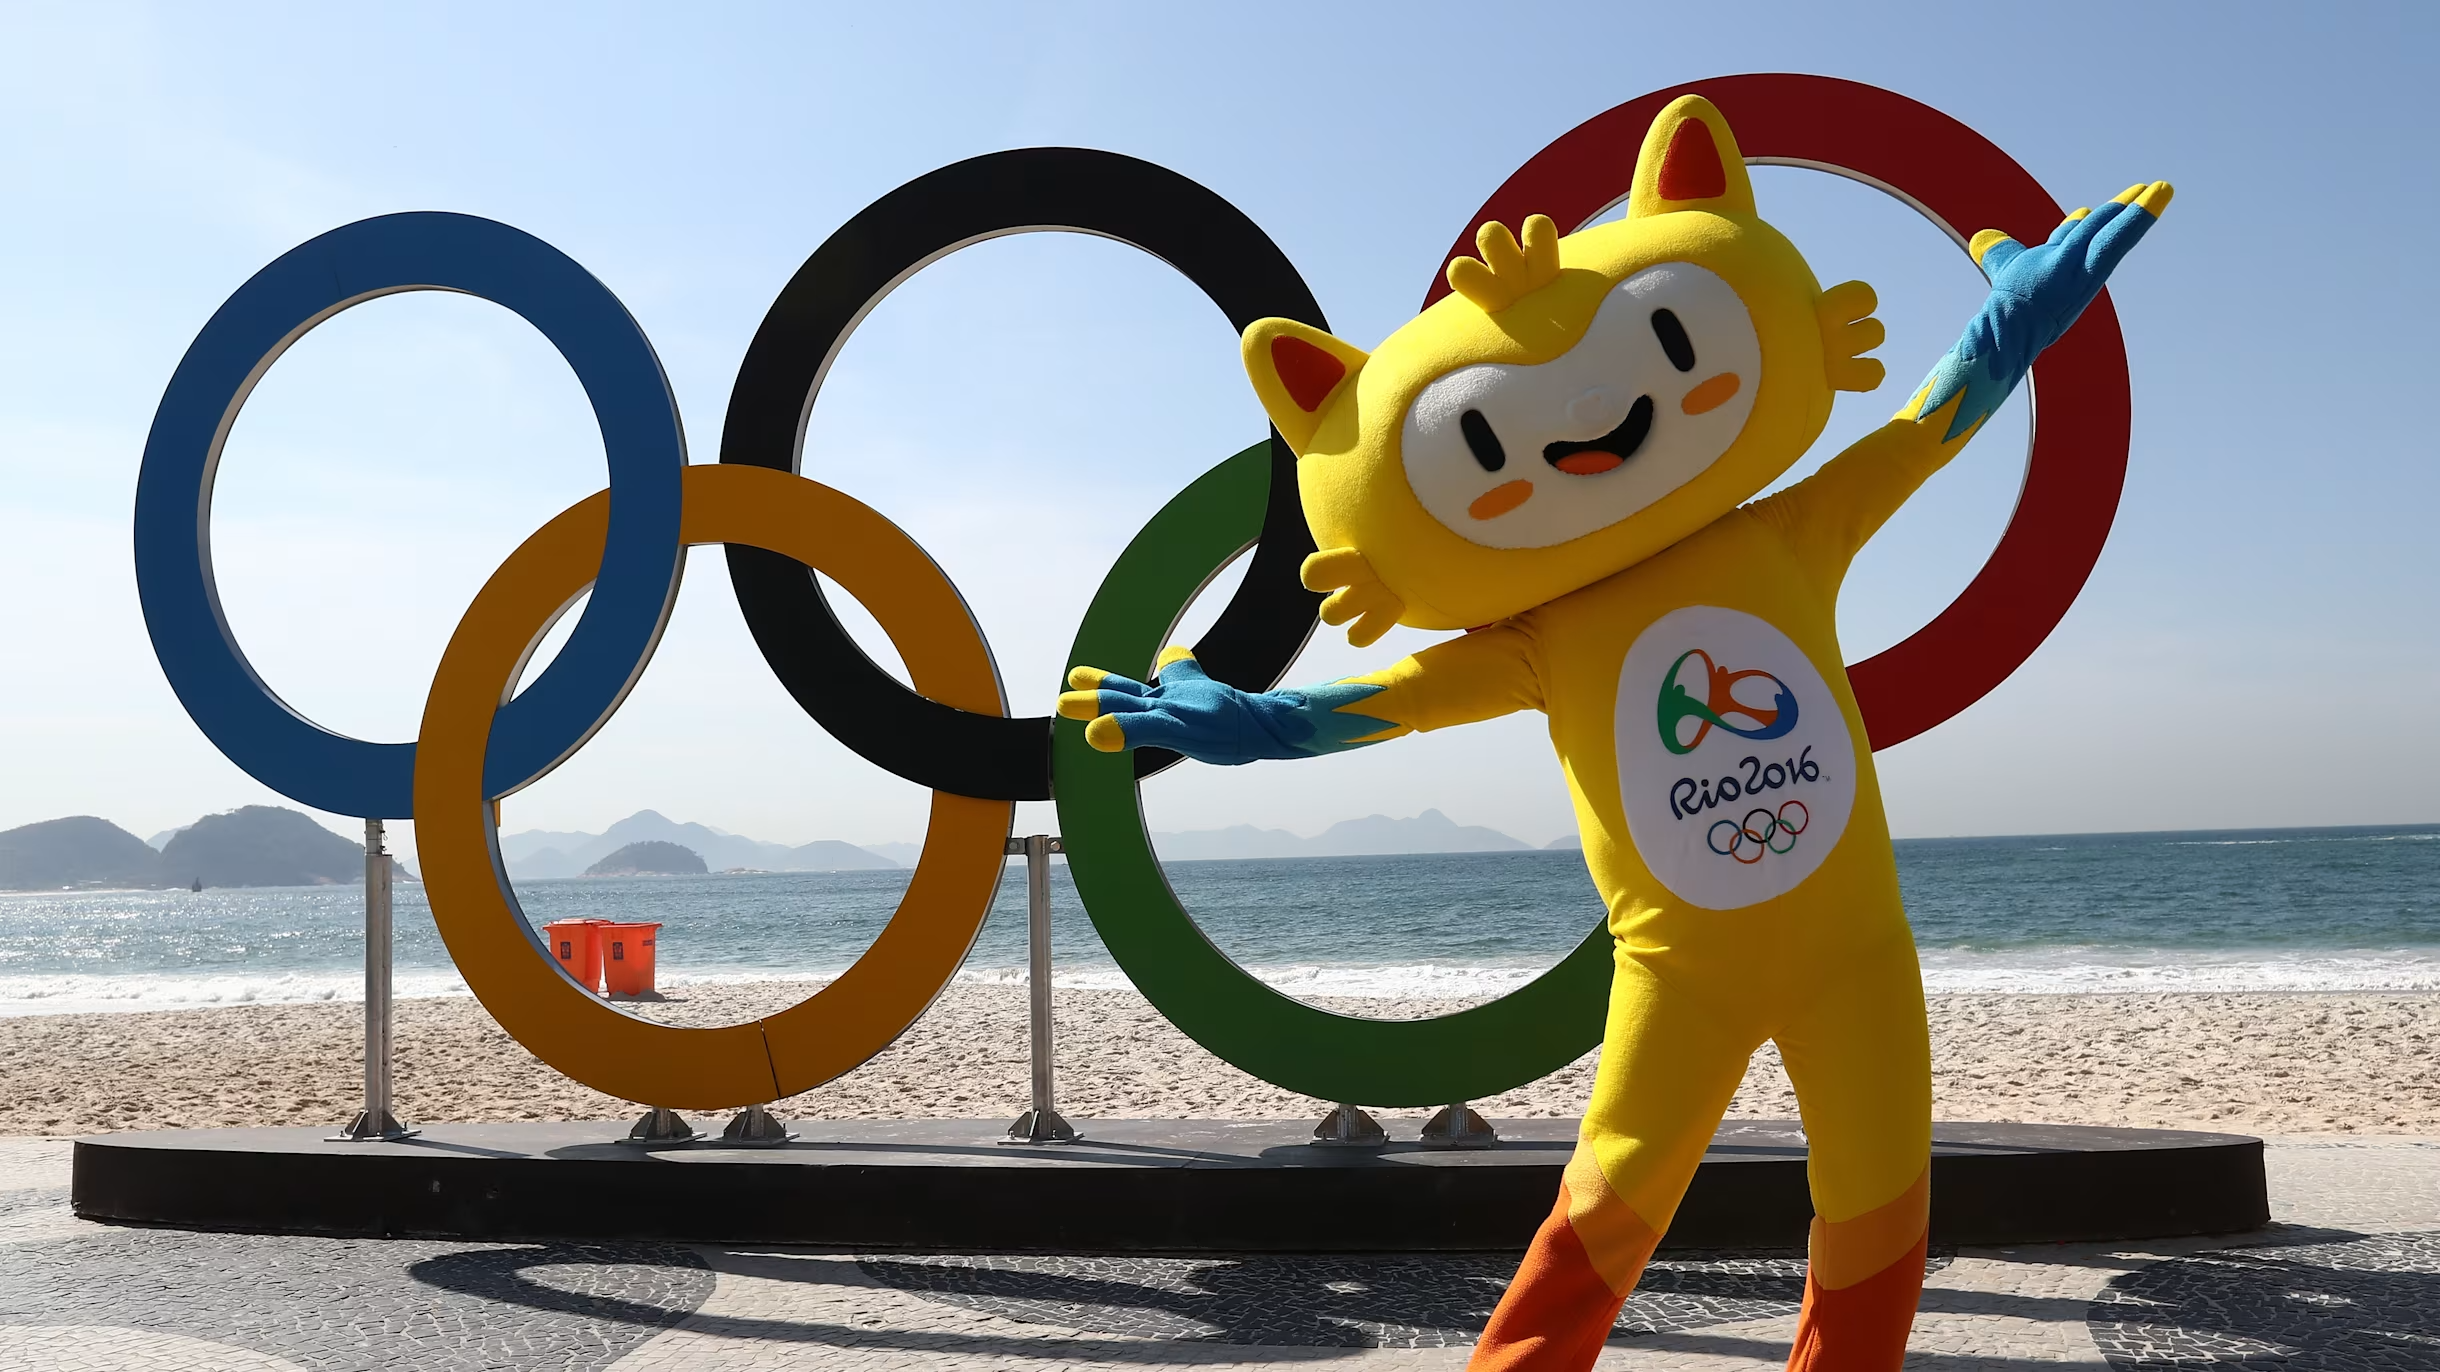 Imagem de Vinícius, mascote das Olimpíadas Rio 2016, em homenagem ao escritor, compositor e diplomata Vinícius de Moraes